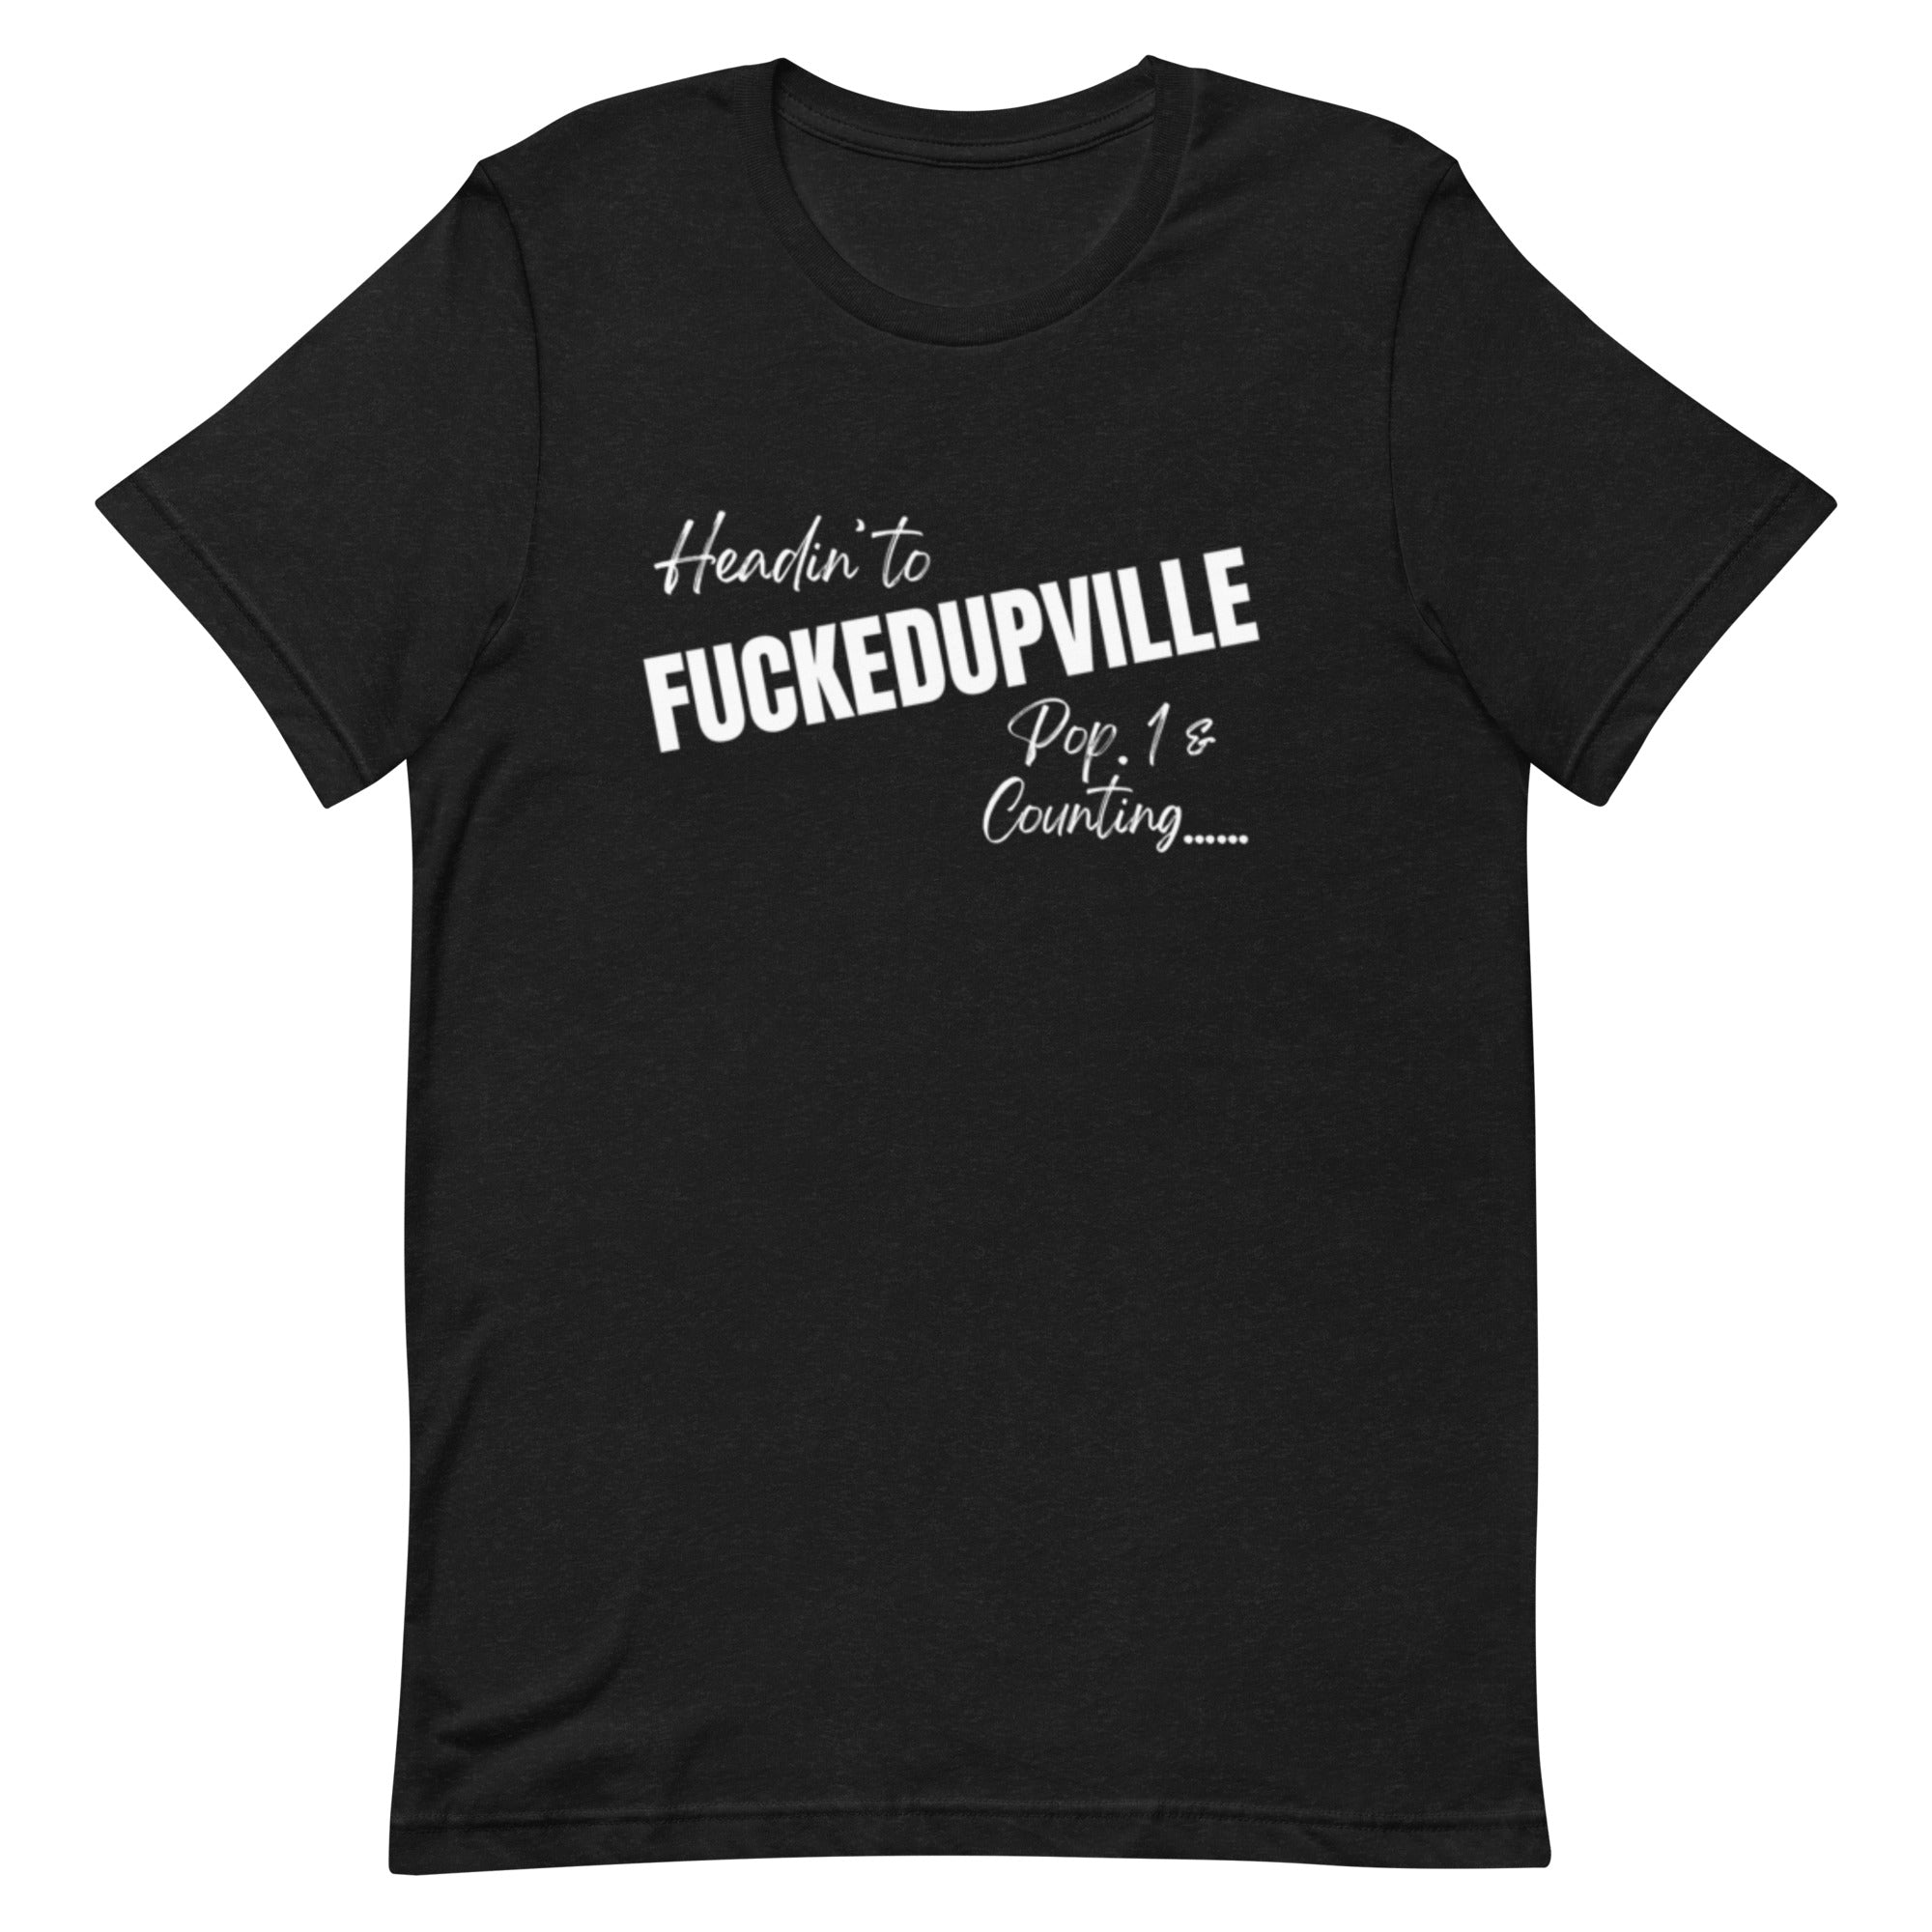 Fuckedupville T-Shirt